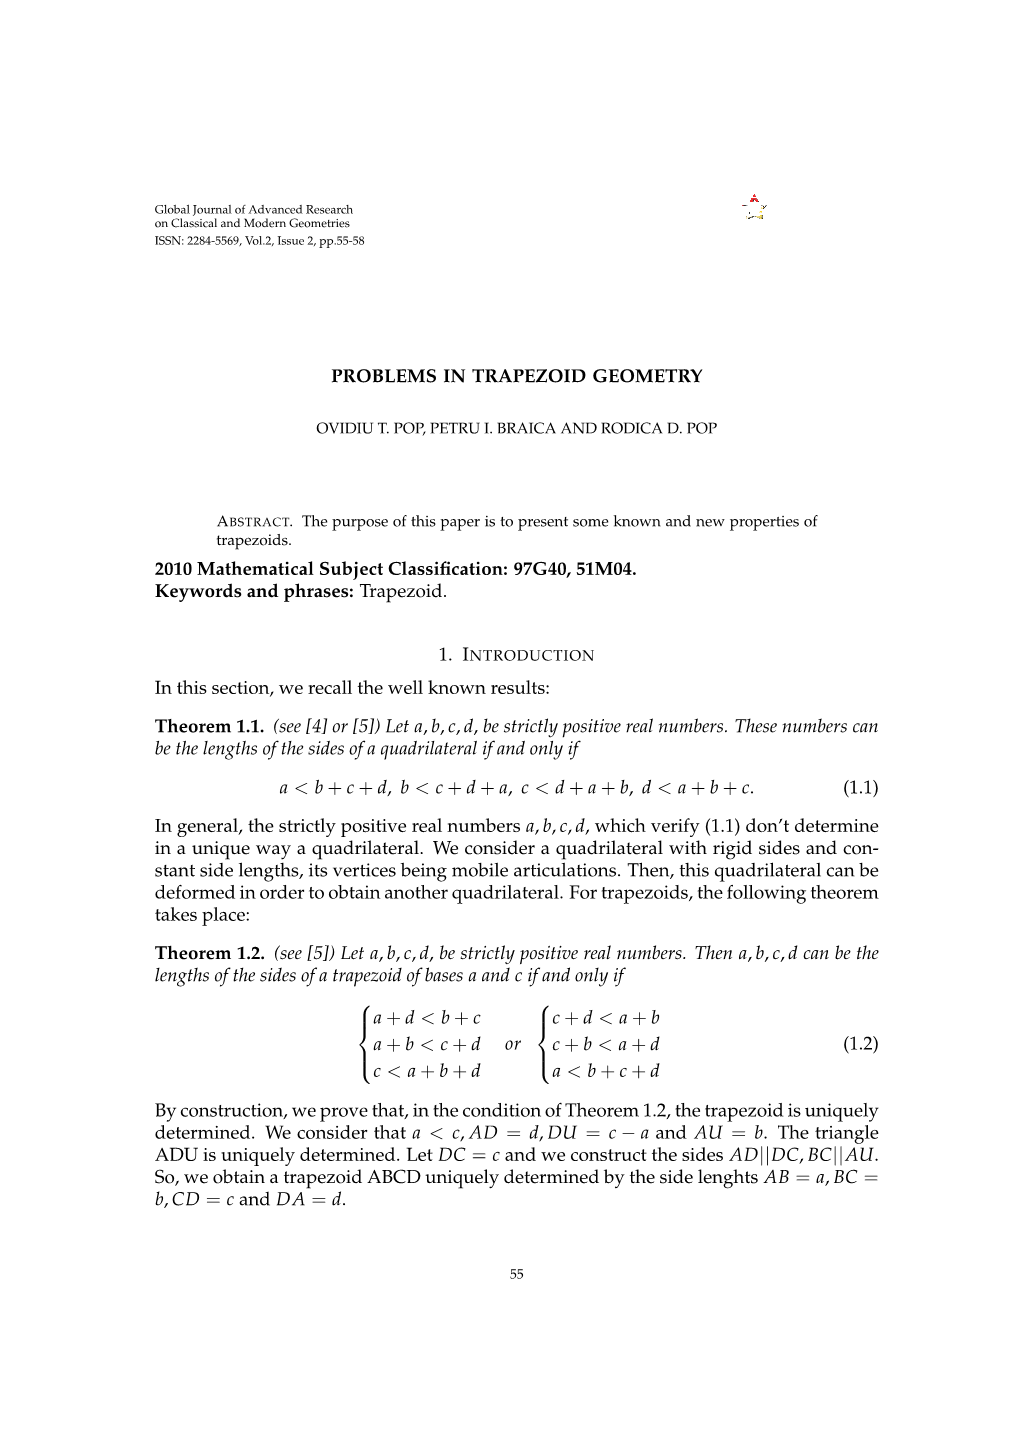 Problems in Trapezoid Geometry Ovidiu T. Pop, Petru I. Braica and Rodica D